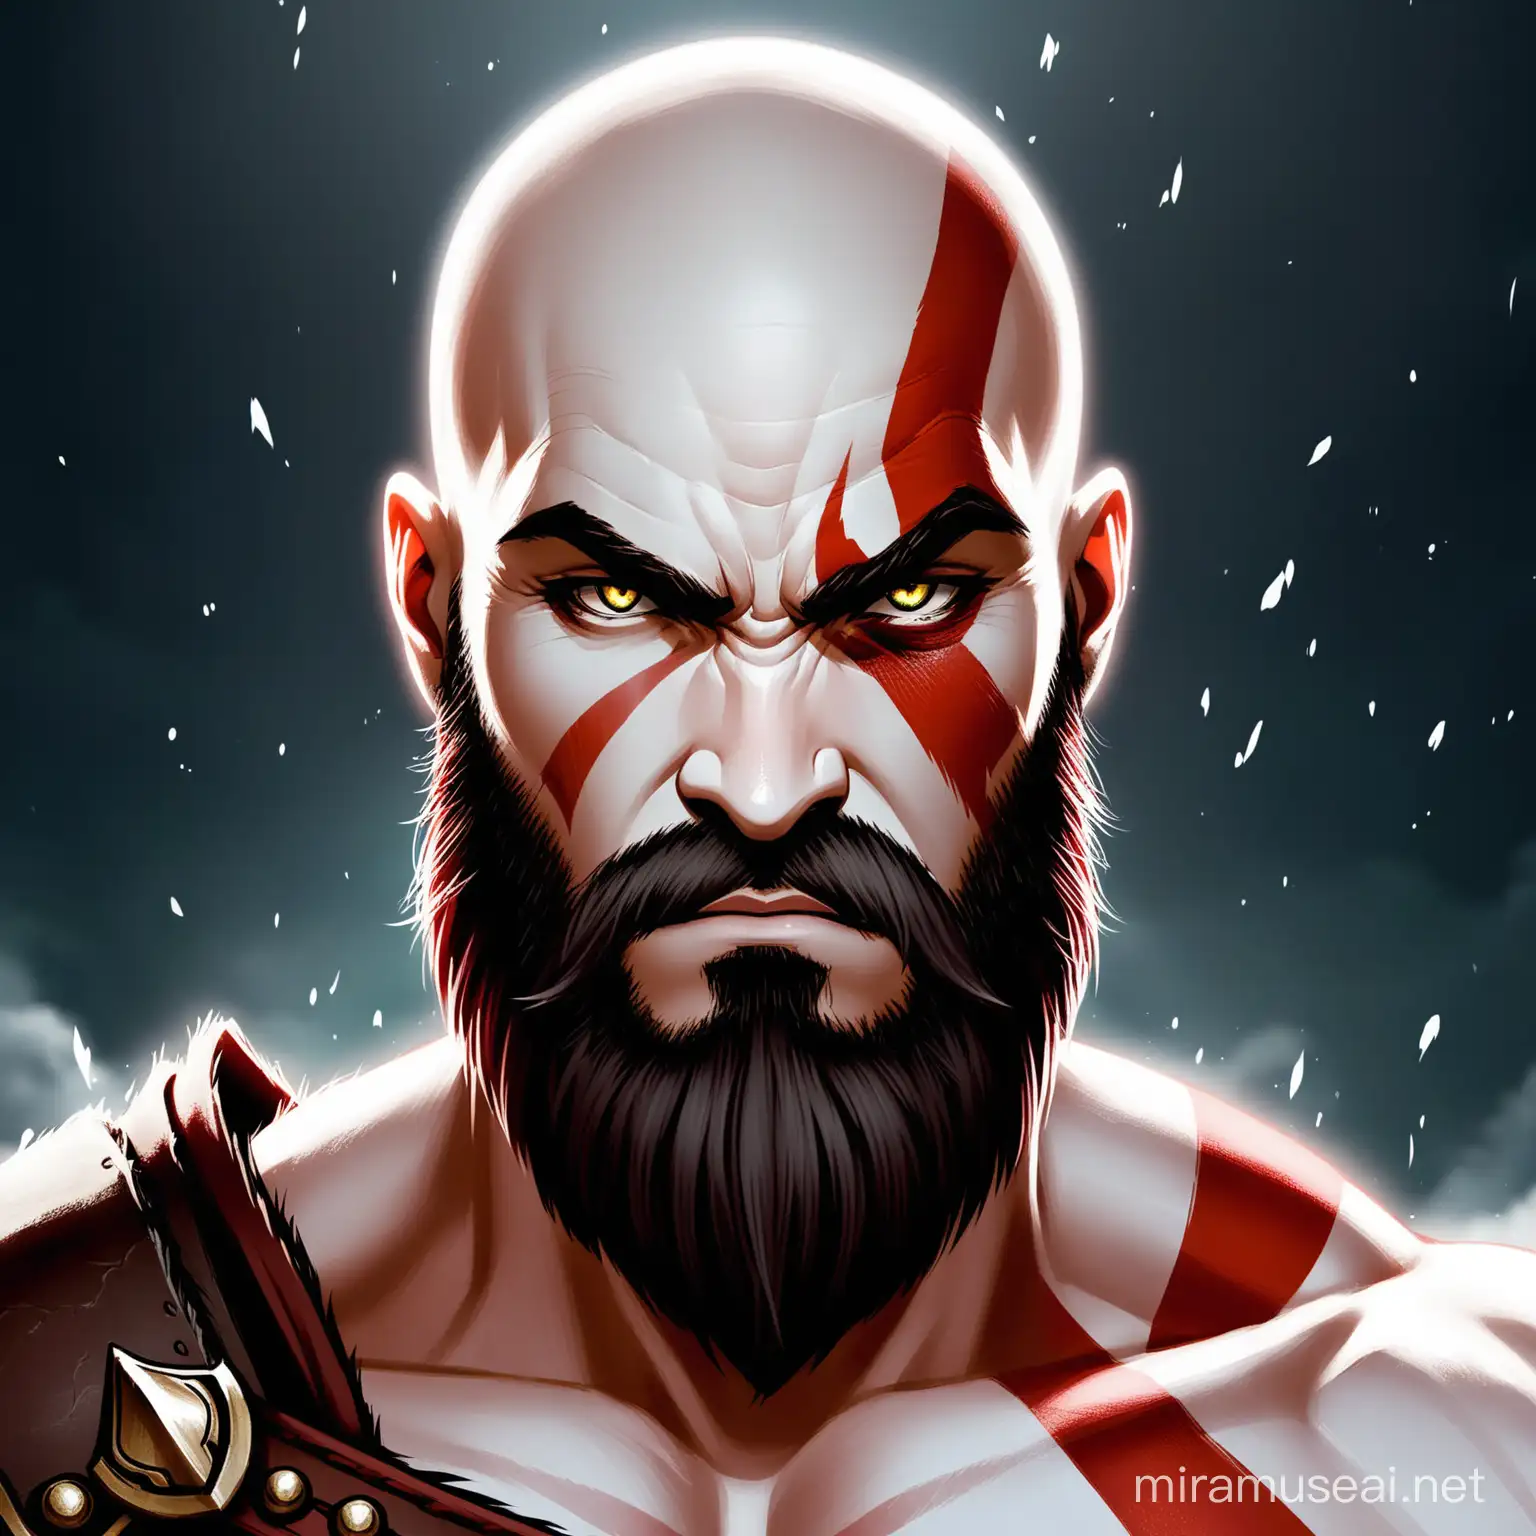 Kratos from God of War Ragnarok Staring Intensely at Camera